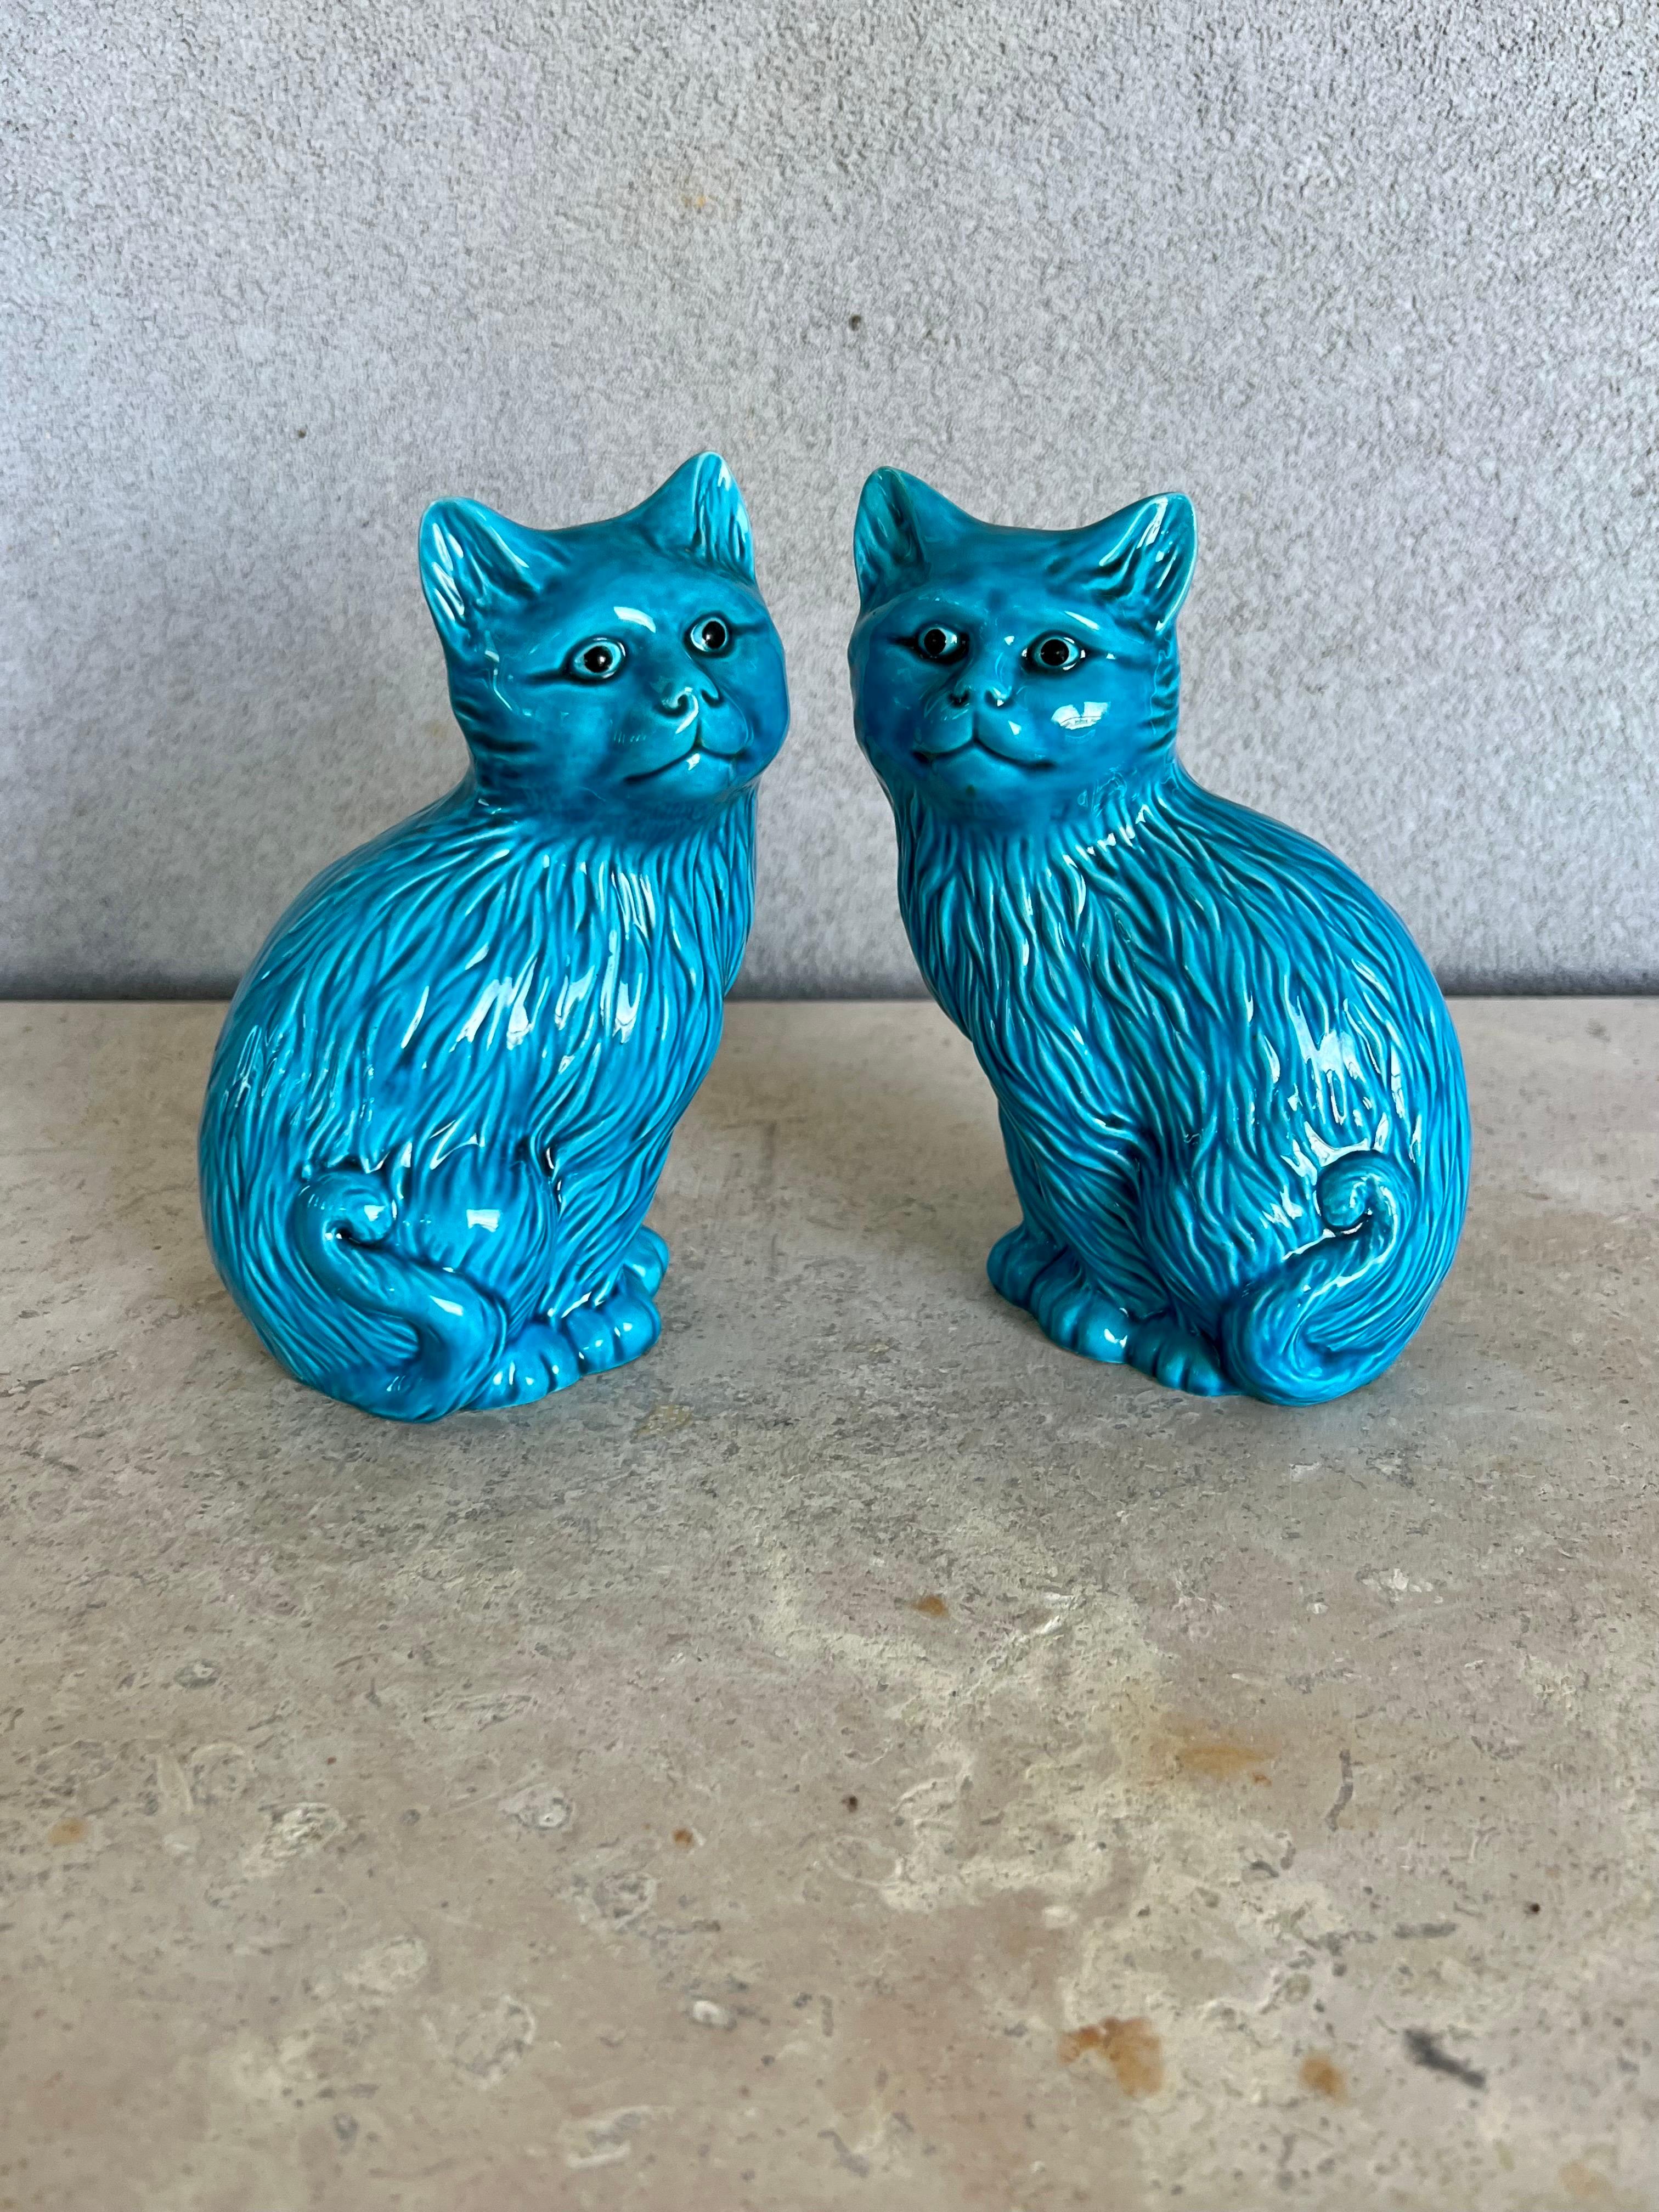 Belle paire de figurines de chat en céramique bleu turquoise. Il s'agit d'une paire de chats asiatiques en poterie d'art bleue, des statues de chats en céramique qui se font face. Une belle teinte vive de bleu/ turquoise brillant et de très beaux